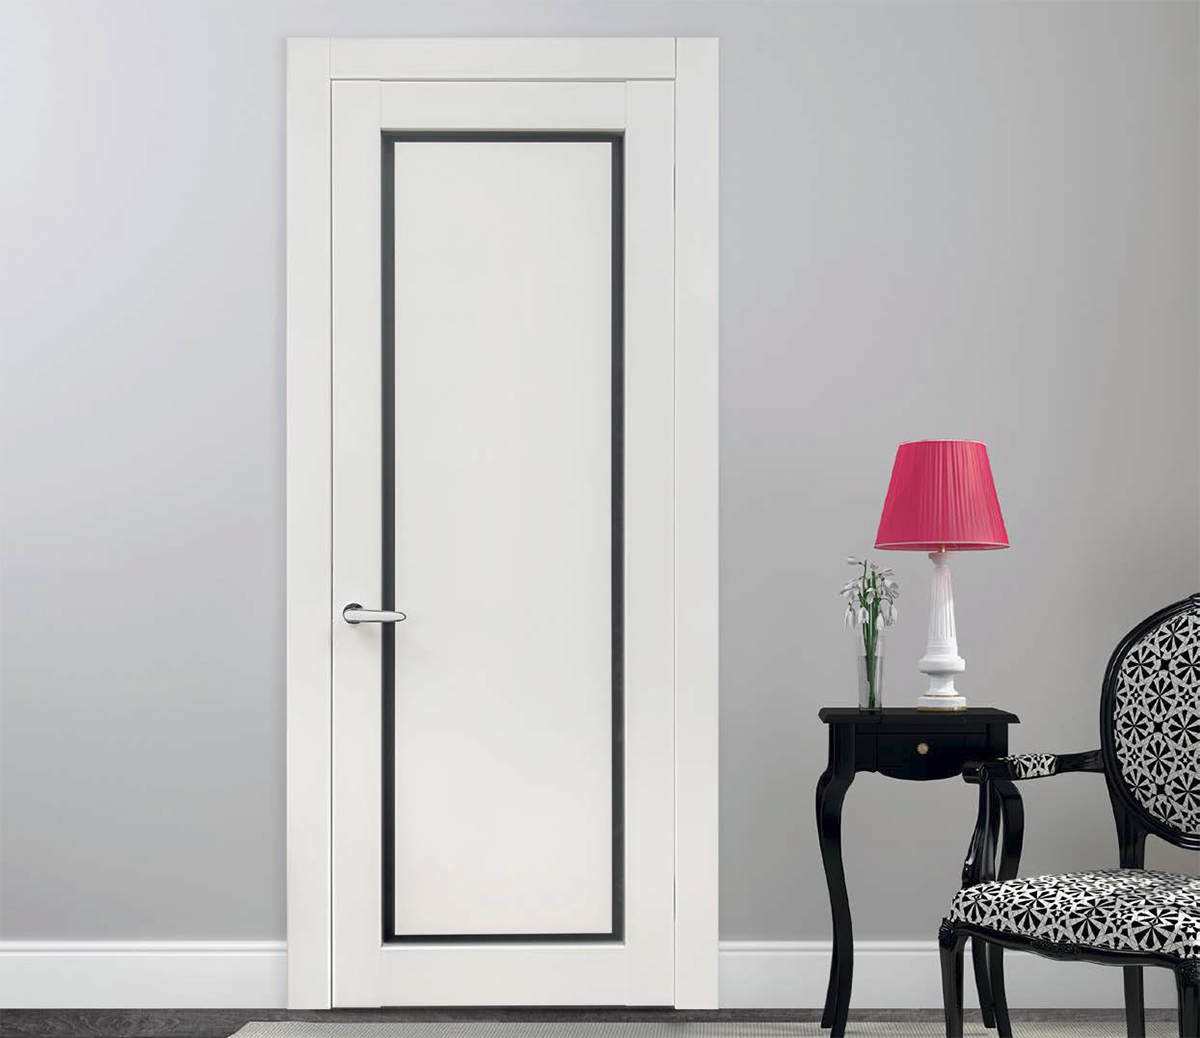 Высокое качество и прочность дверей INTERIOR DOORS